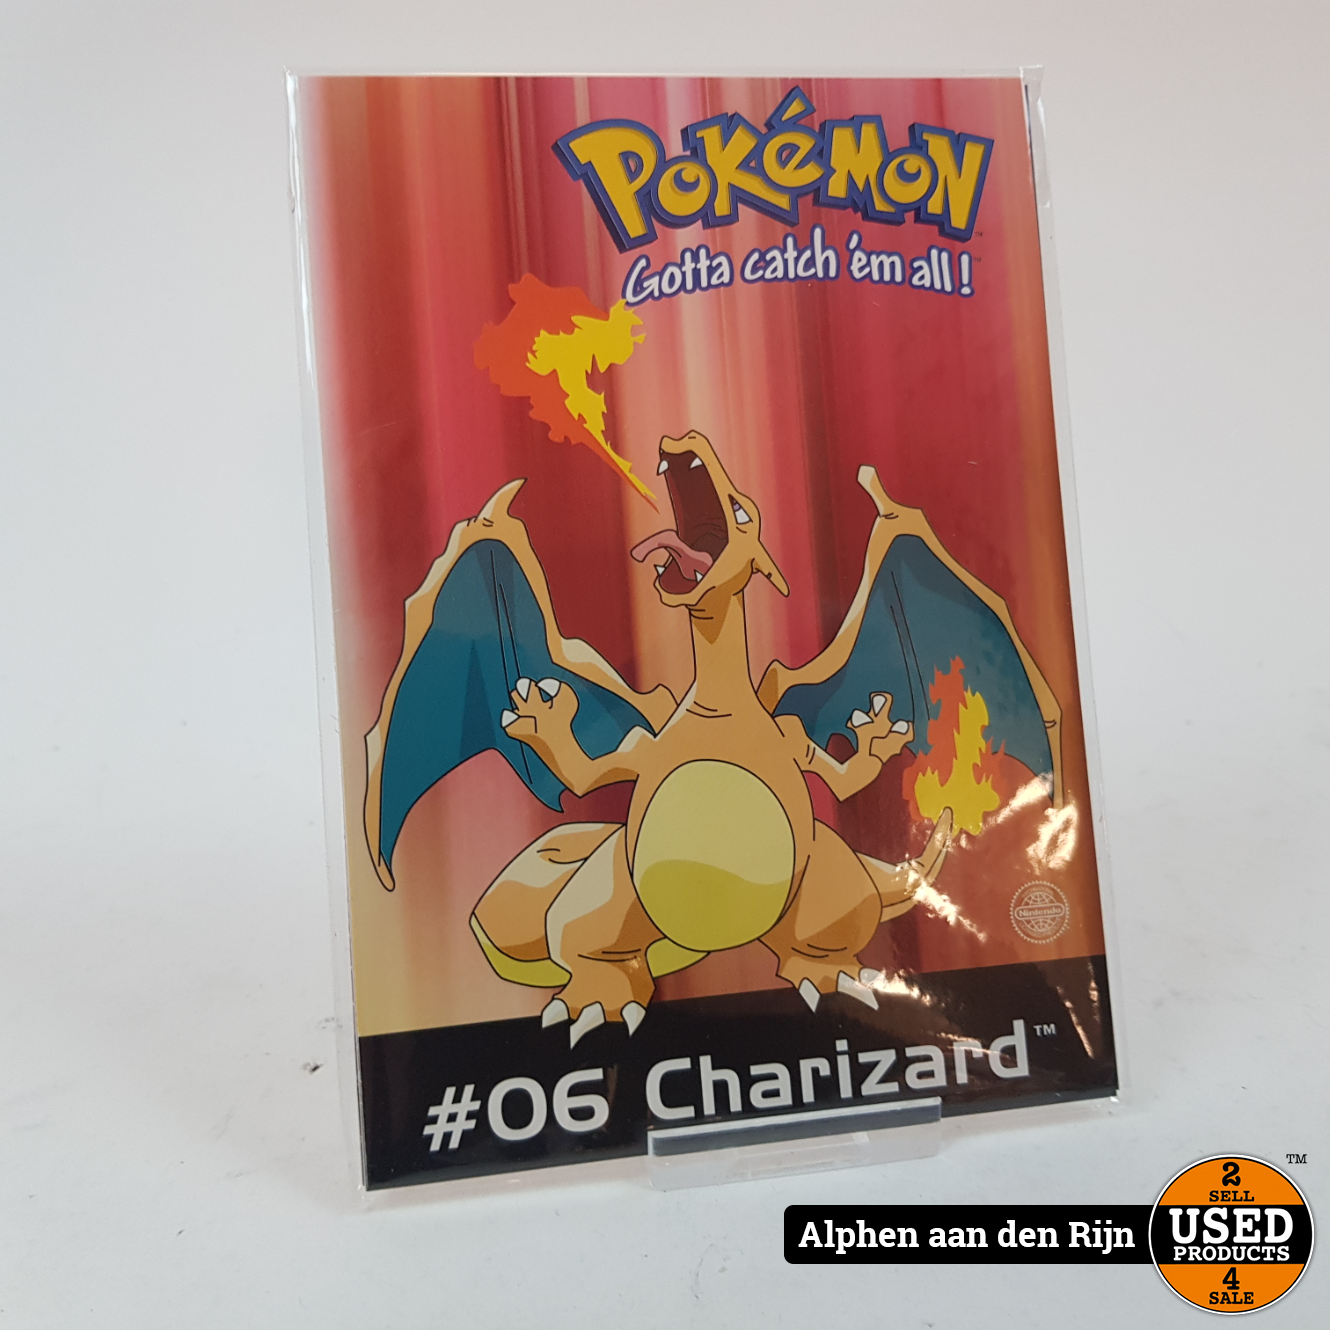 beloning Afgrond Darmen Pokemon kaarten - wenskaarten Origineel Nintendo 1998 - Charizard - Used  Products Alphen aan den Rijn